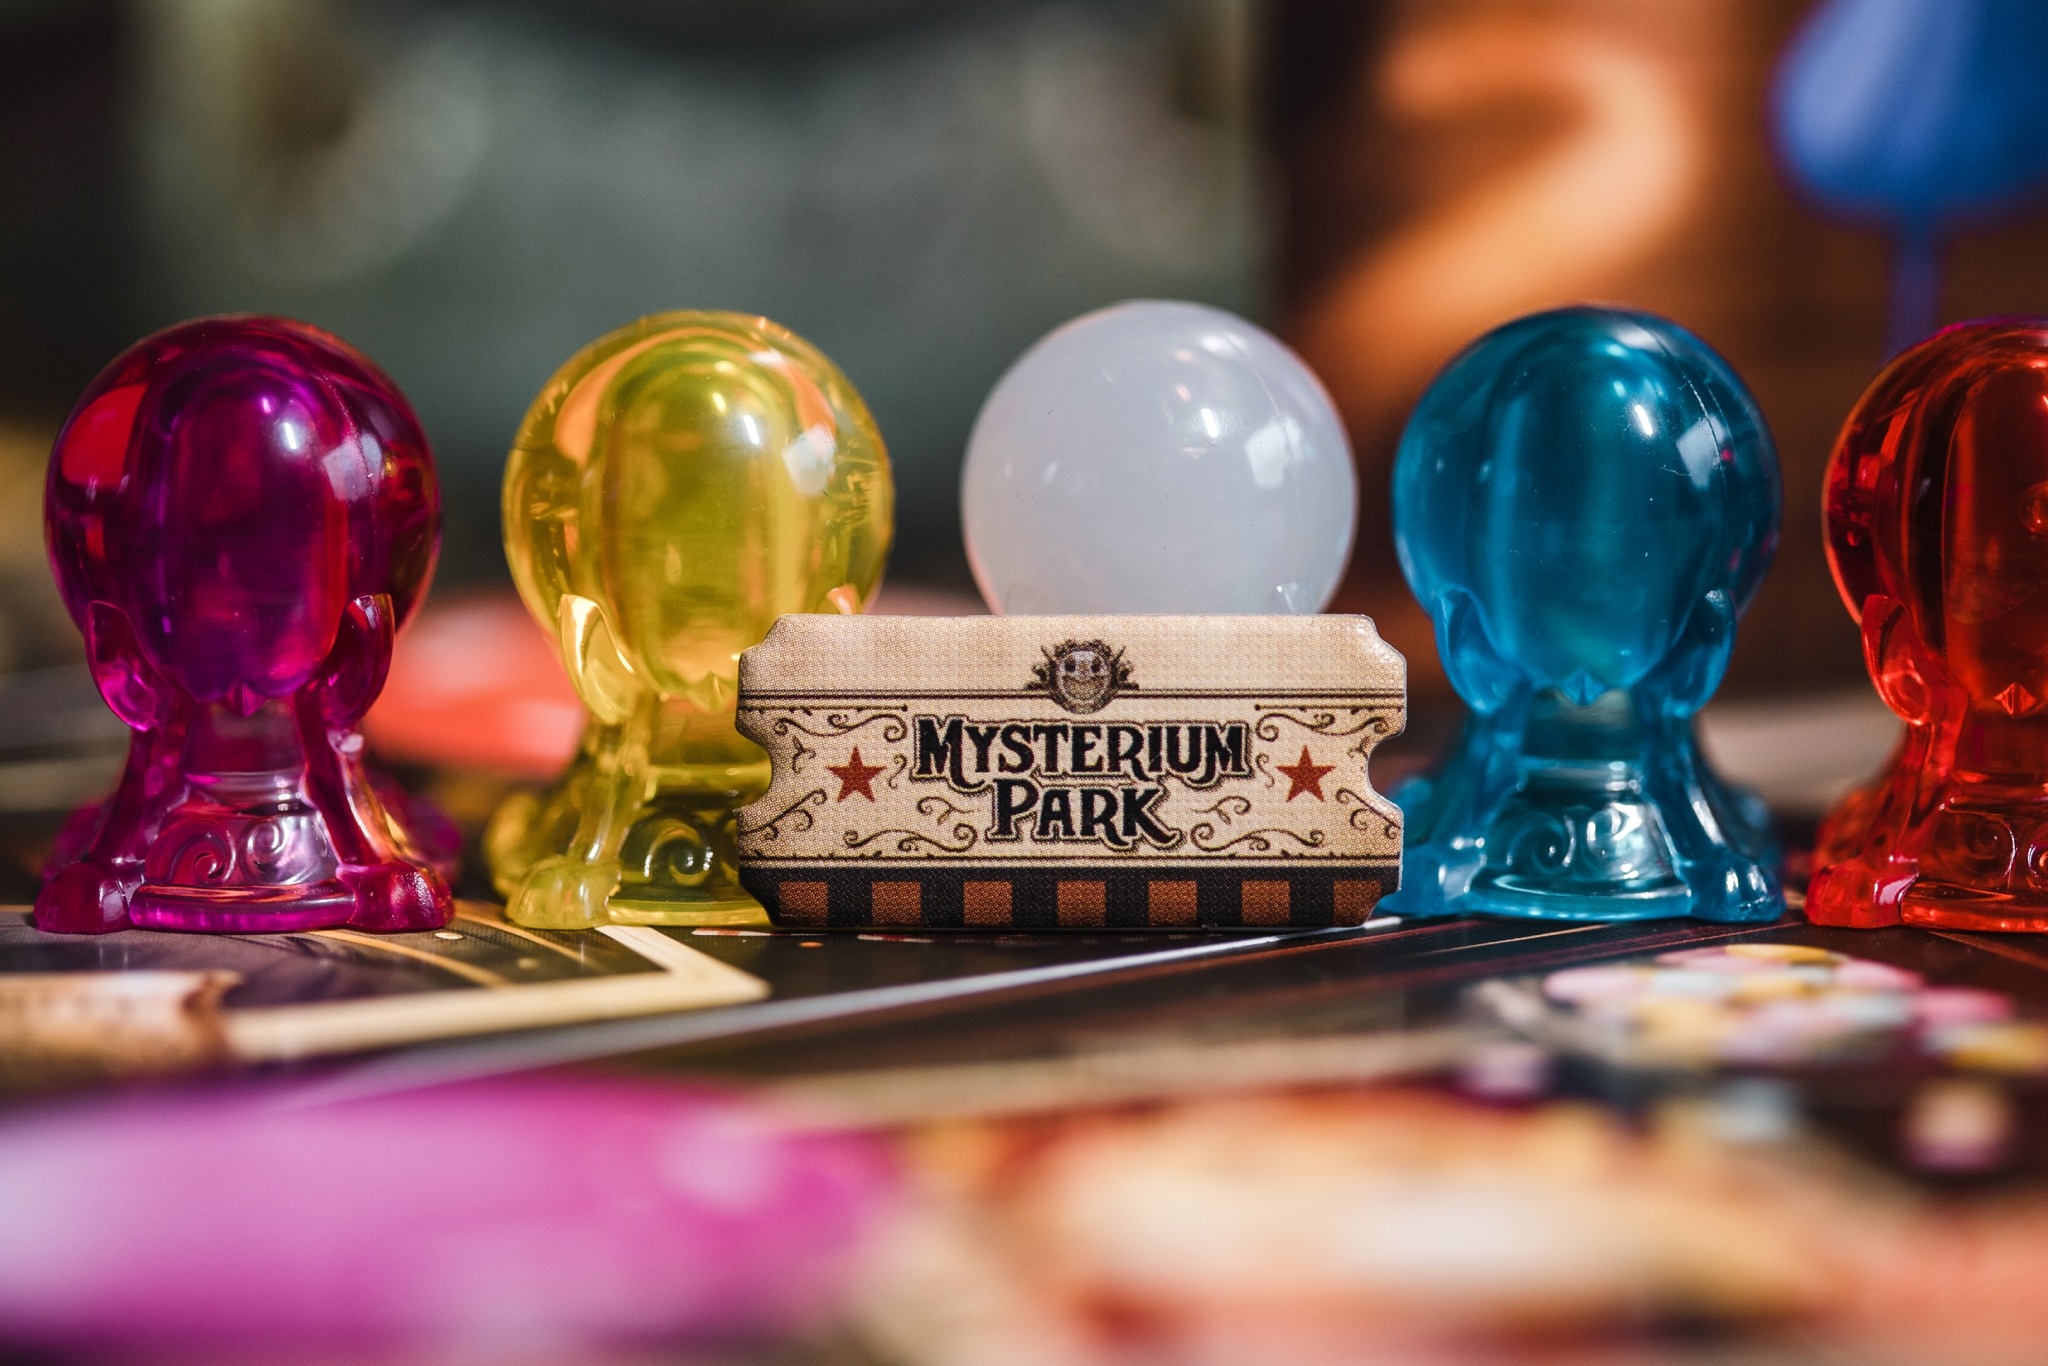 Mysterium park libellud asmodée jeu de société communication dixit 